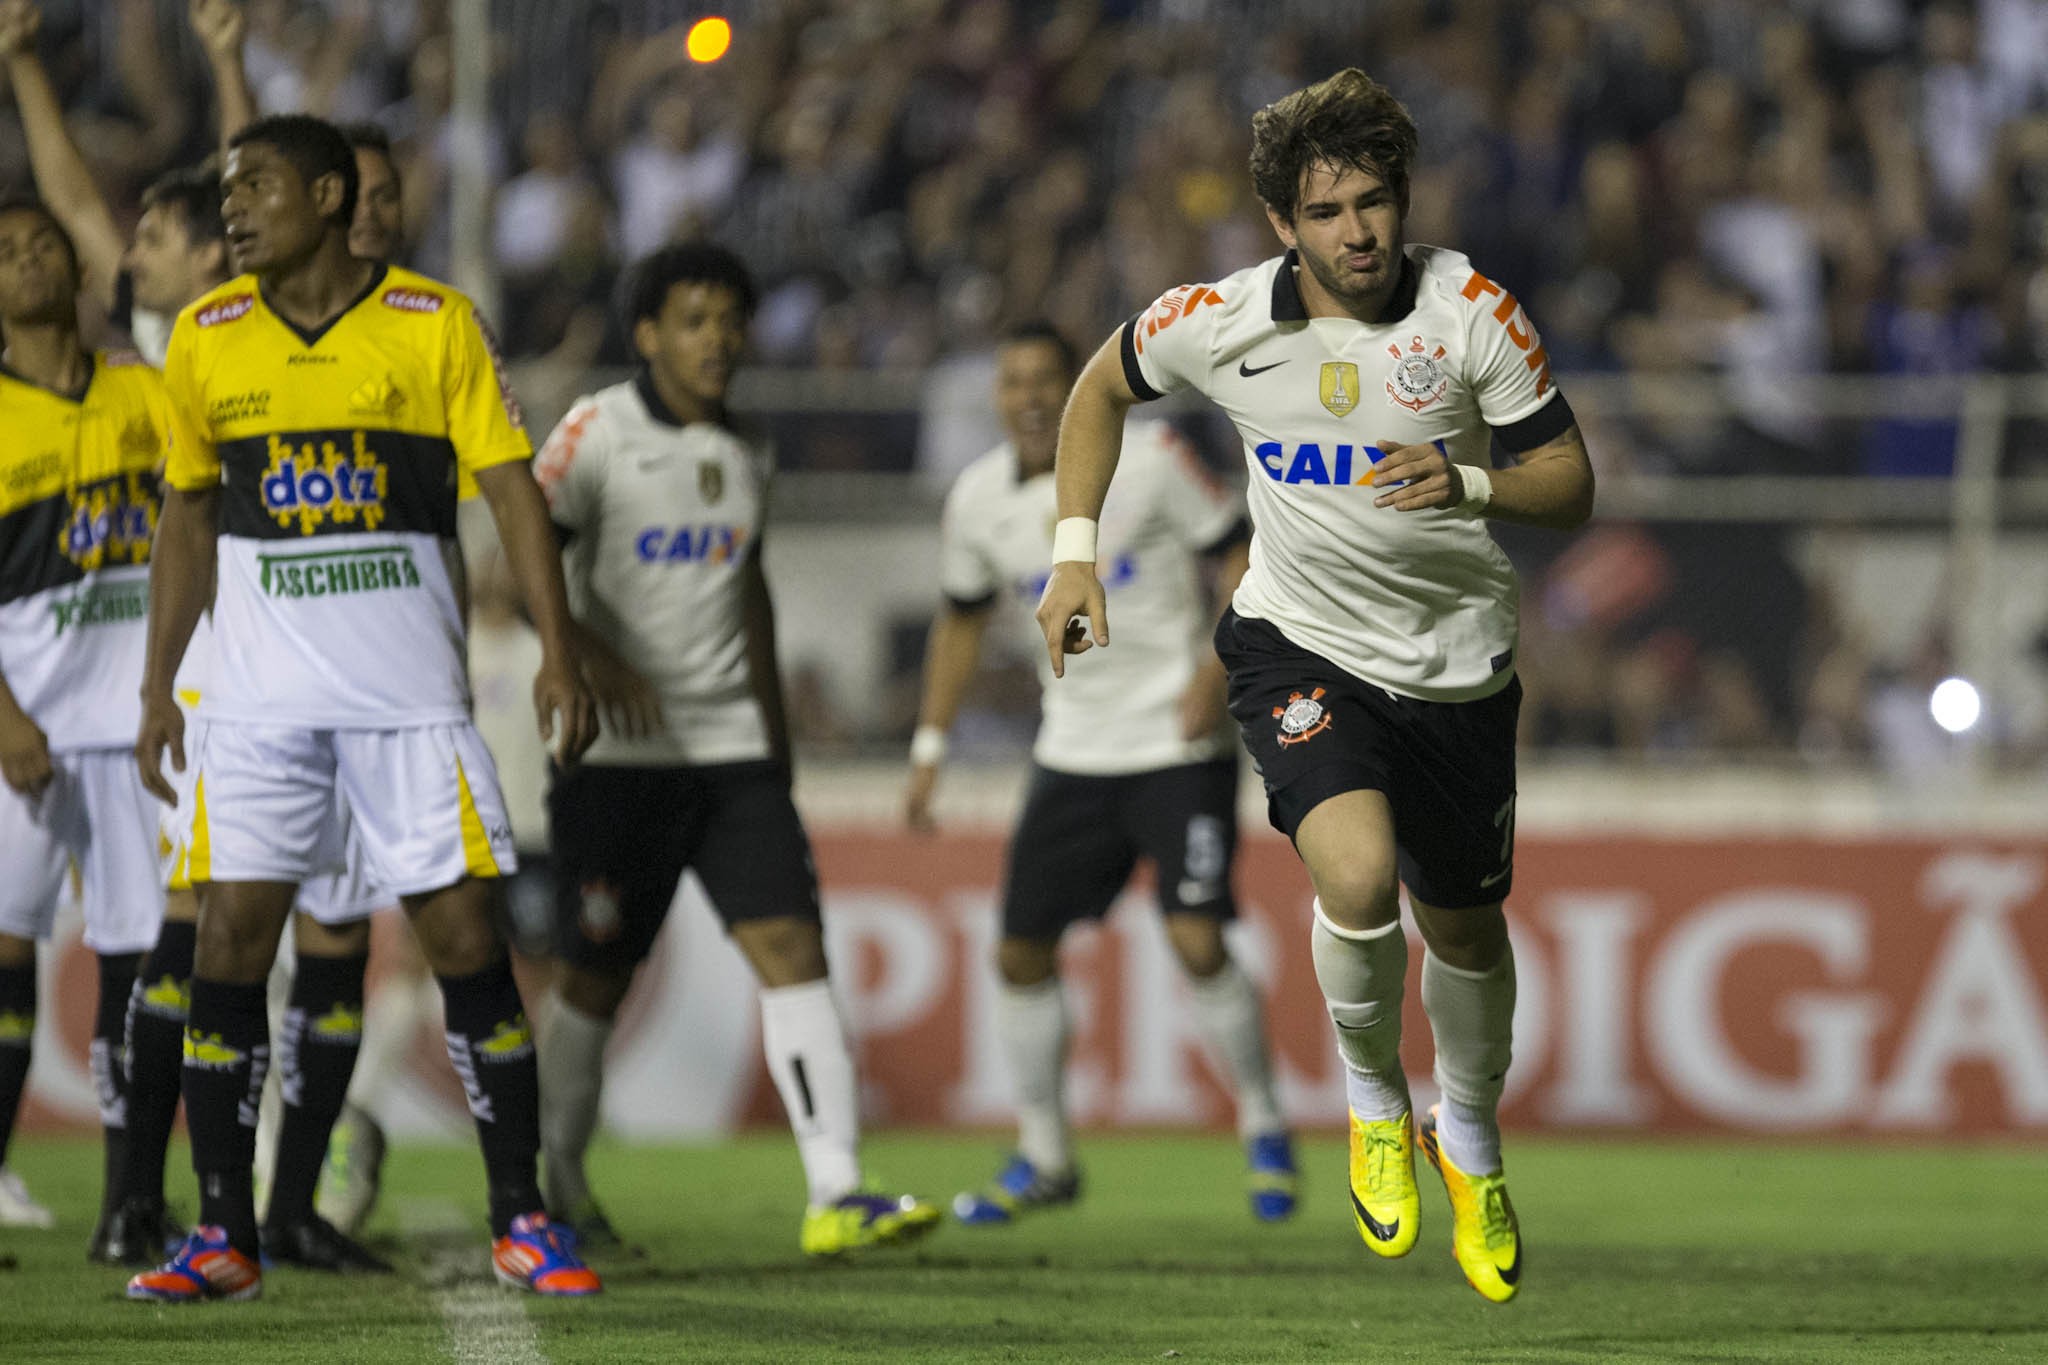 Alexandre Pato (atacante) - Contratado por R$ 40 milhões pelo Corinthians em 2013.